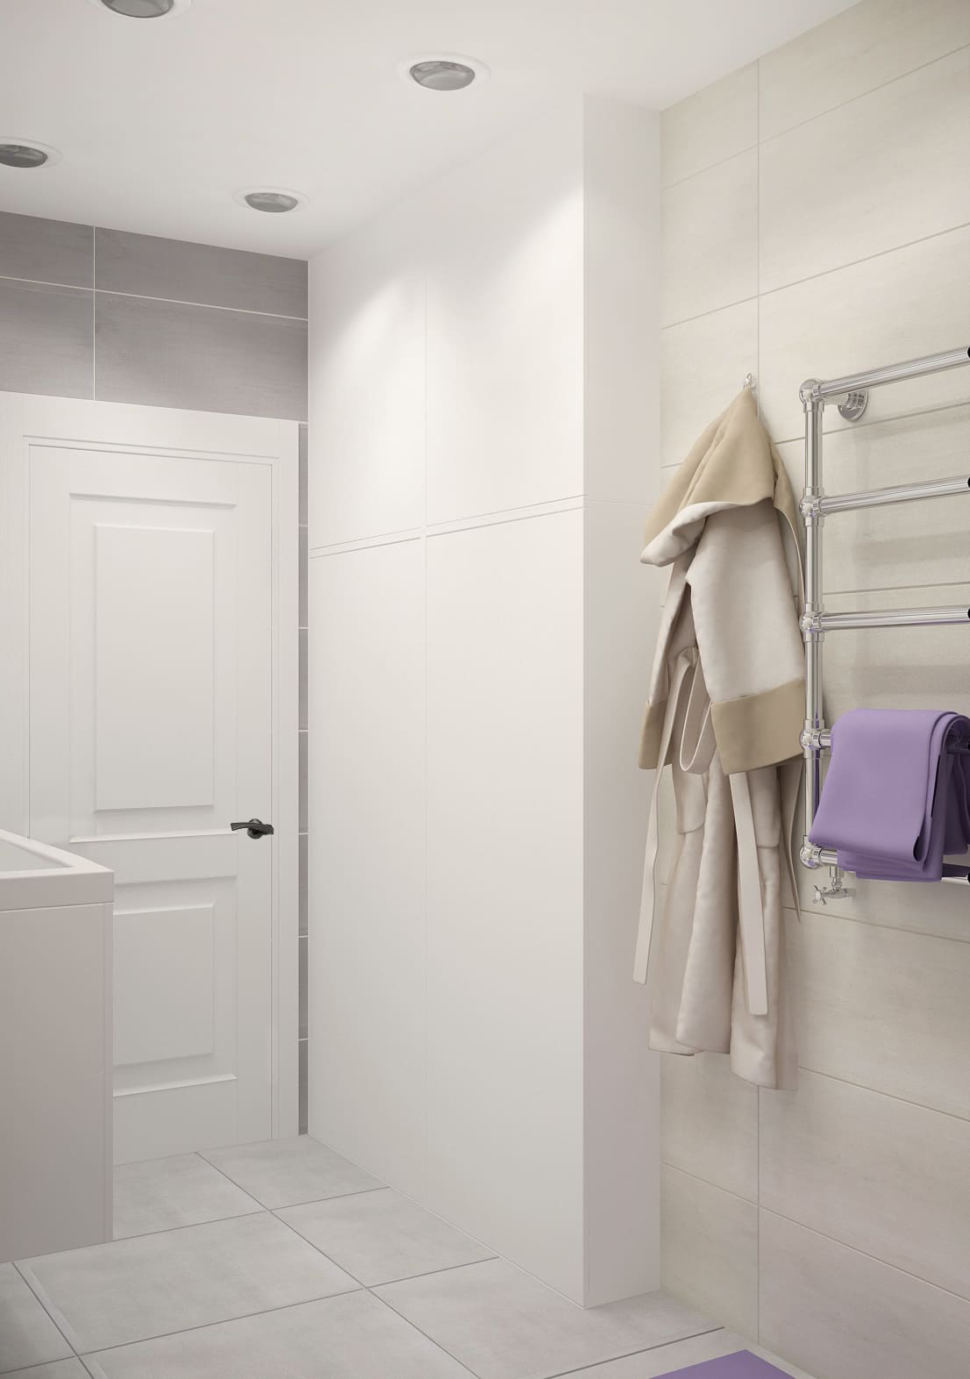 Визуализация ванной комнаты 6 кв.м в серых оттенках, зеркало, керамическая плитка, встроенный светильник, белый шкаф, вешалка